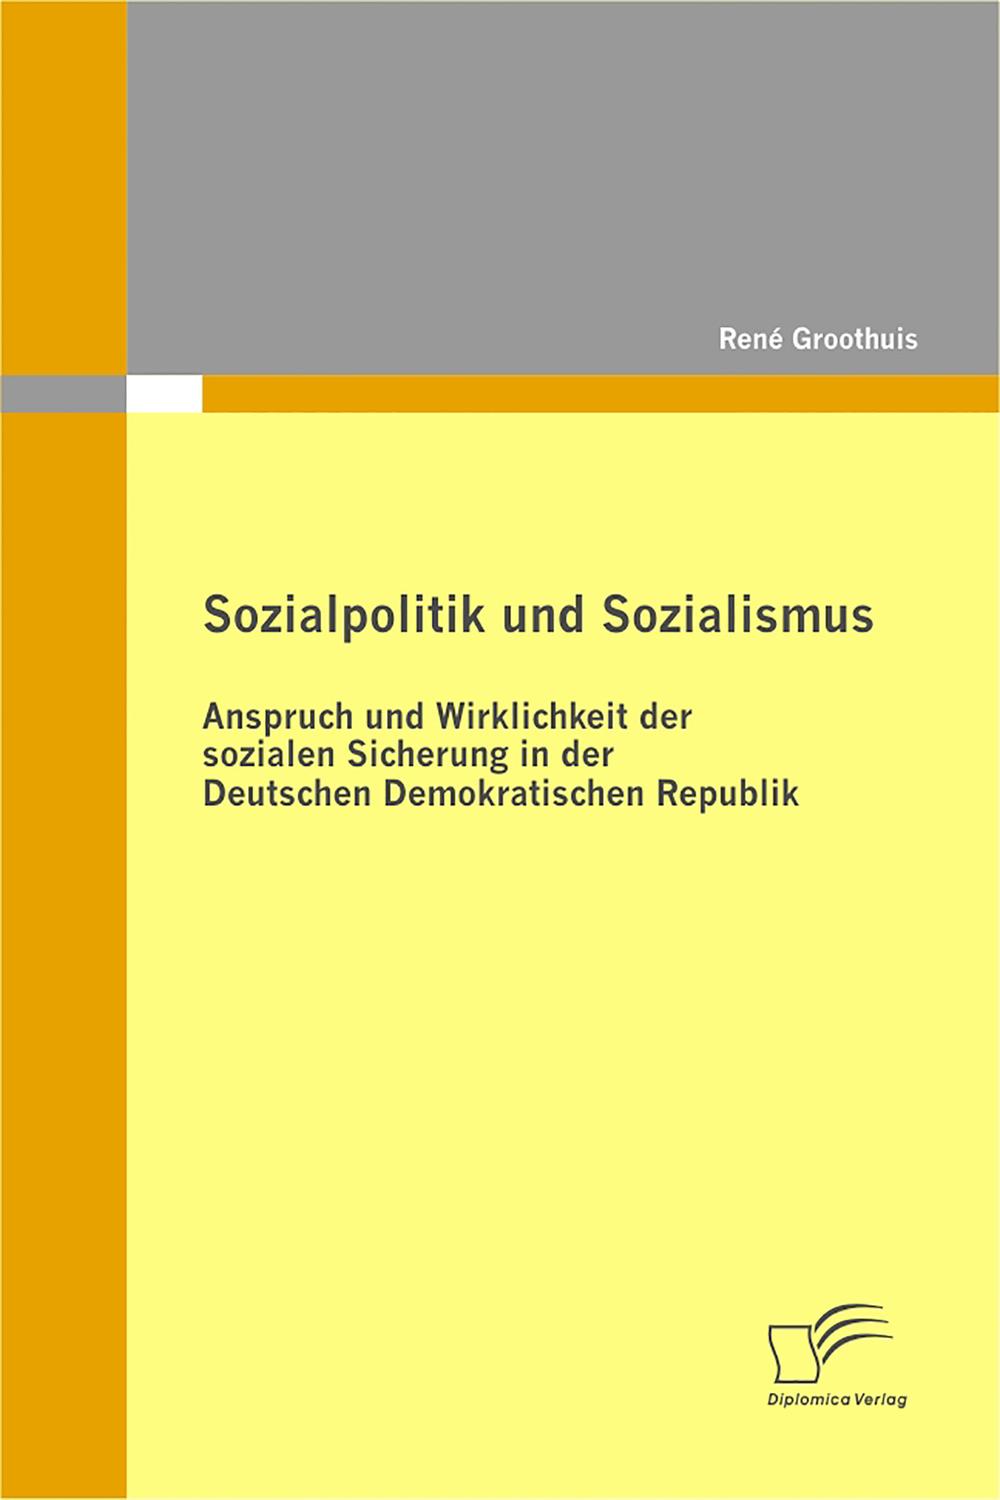 Sozialpolitik und Sozialismus: Anspruch und Wirklichkeit der sozialen Sicherung in der Deutschen Demokratischen Republik - René Groothuis